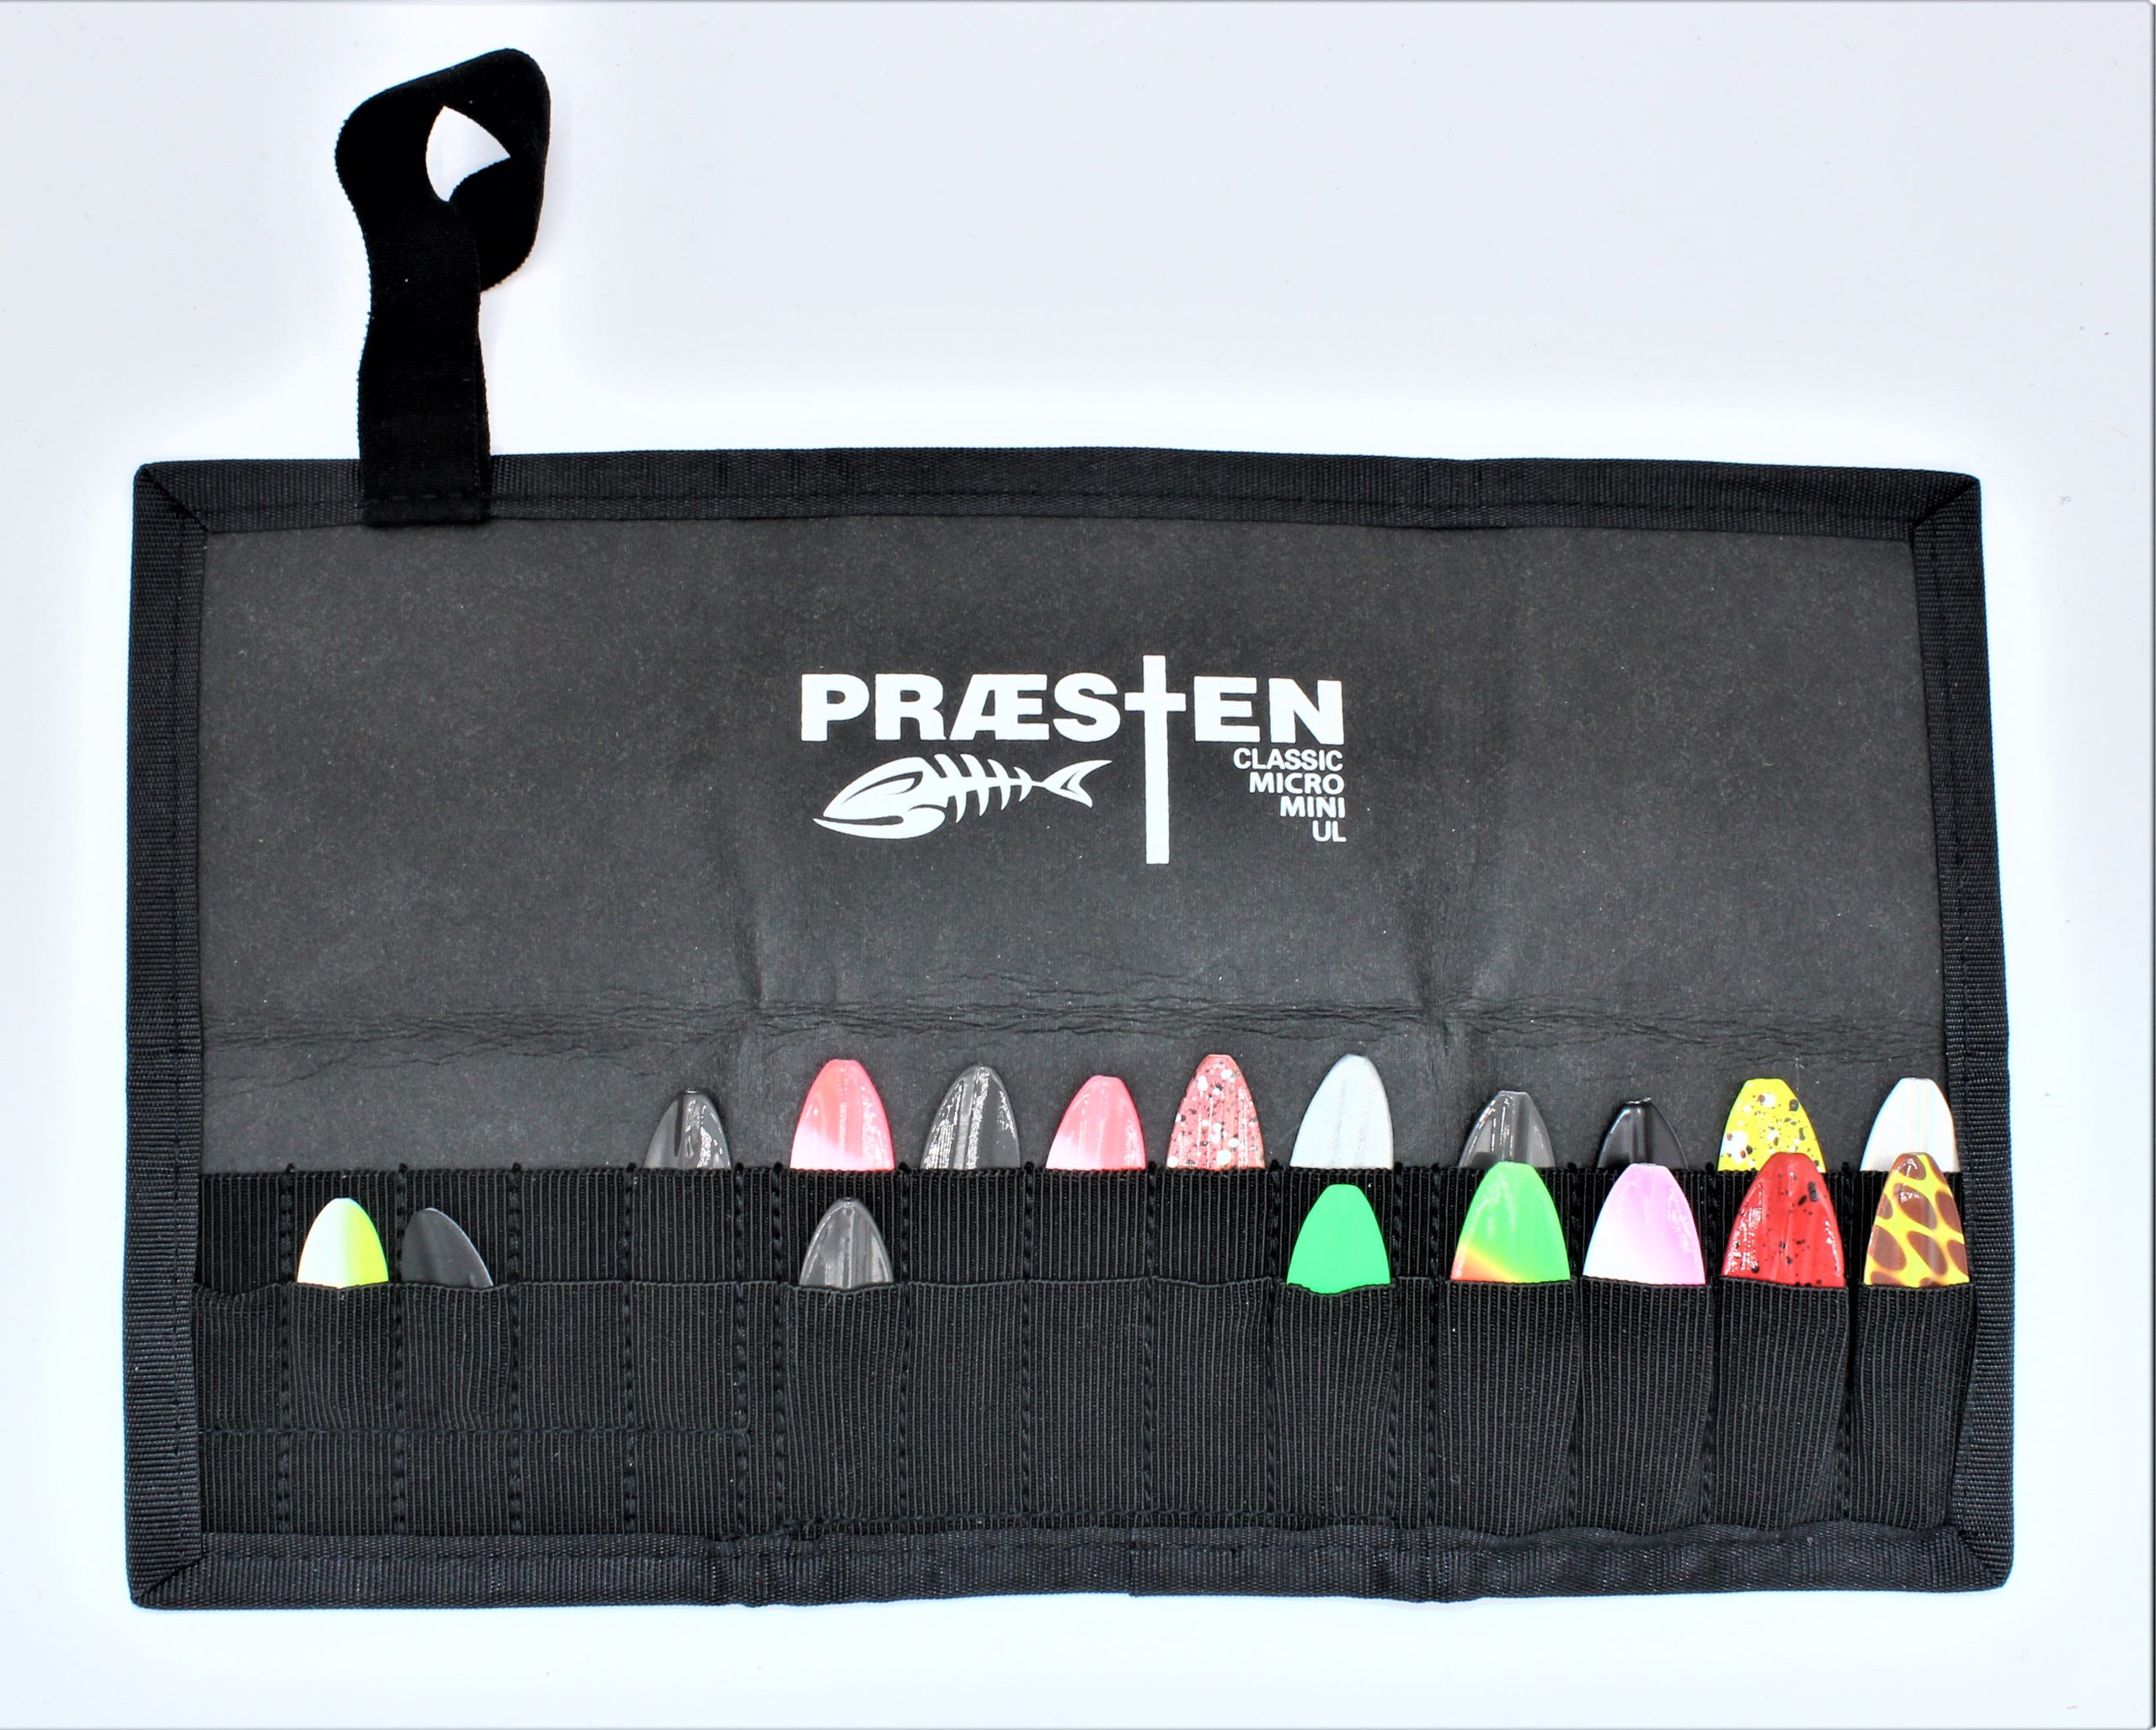 Praesten-Wallet Multi / Tasche Für Praesten- Durchlaufblinker: 10 Micro , 10 Mini Und 8 Classic / UL